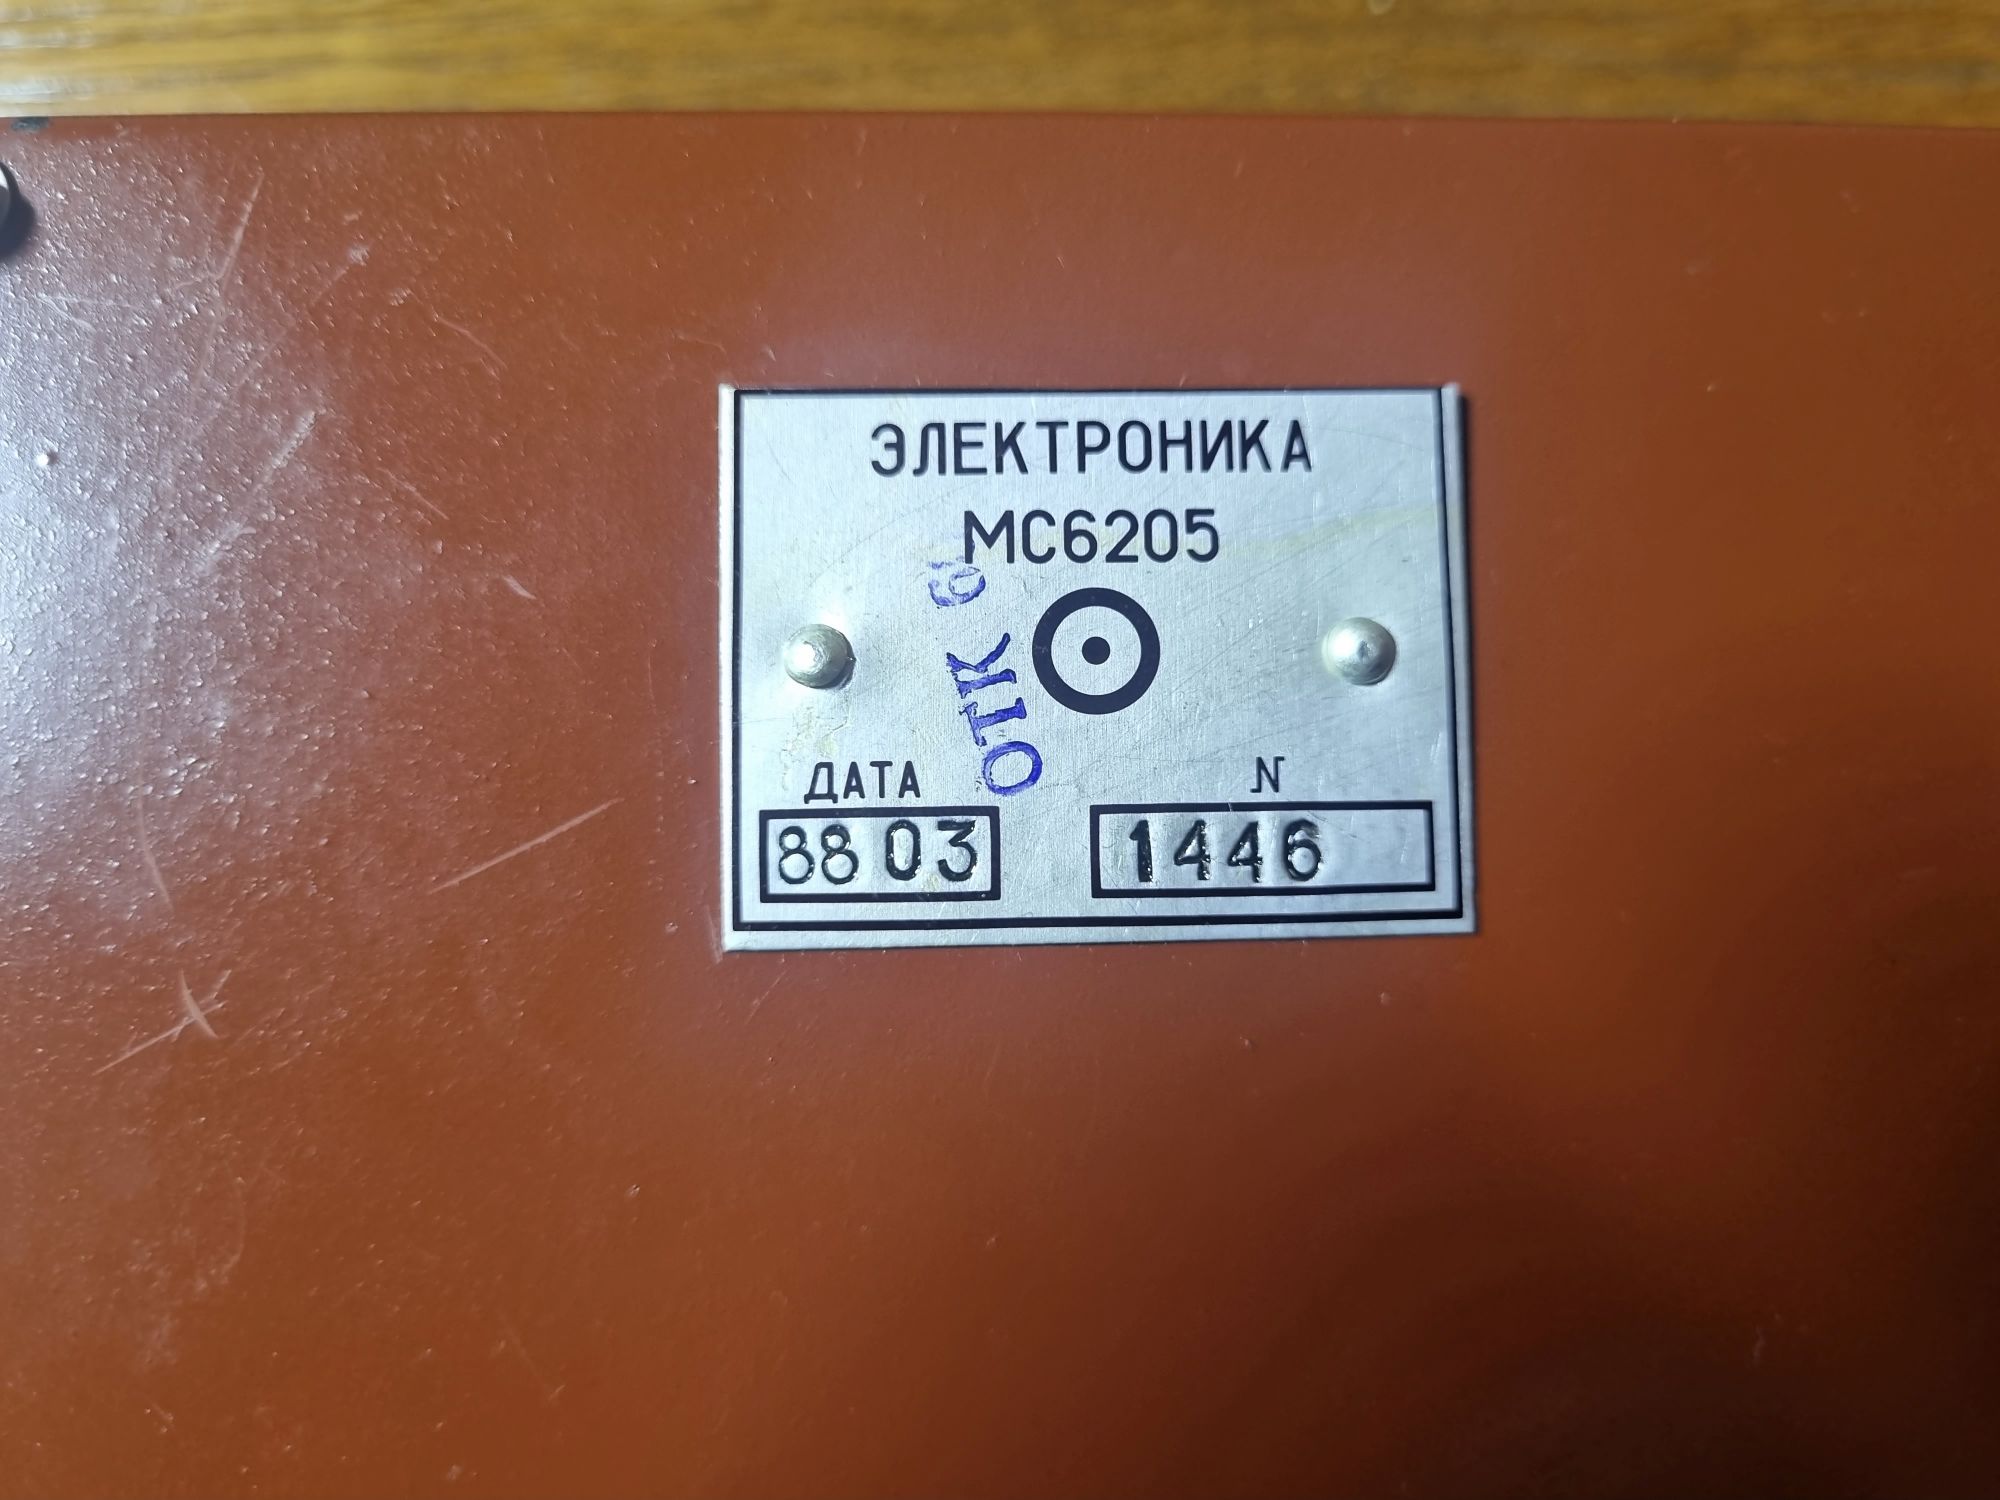 МС6205. Плазменный дисплей советской эпохи - 25